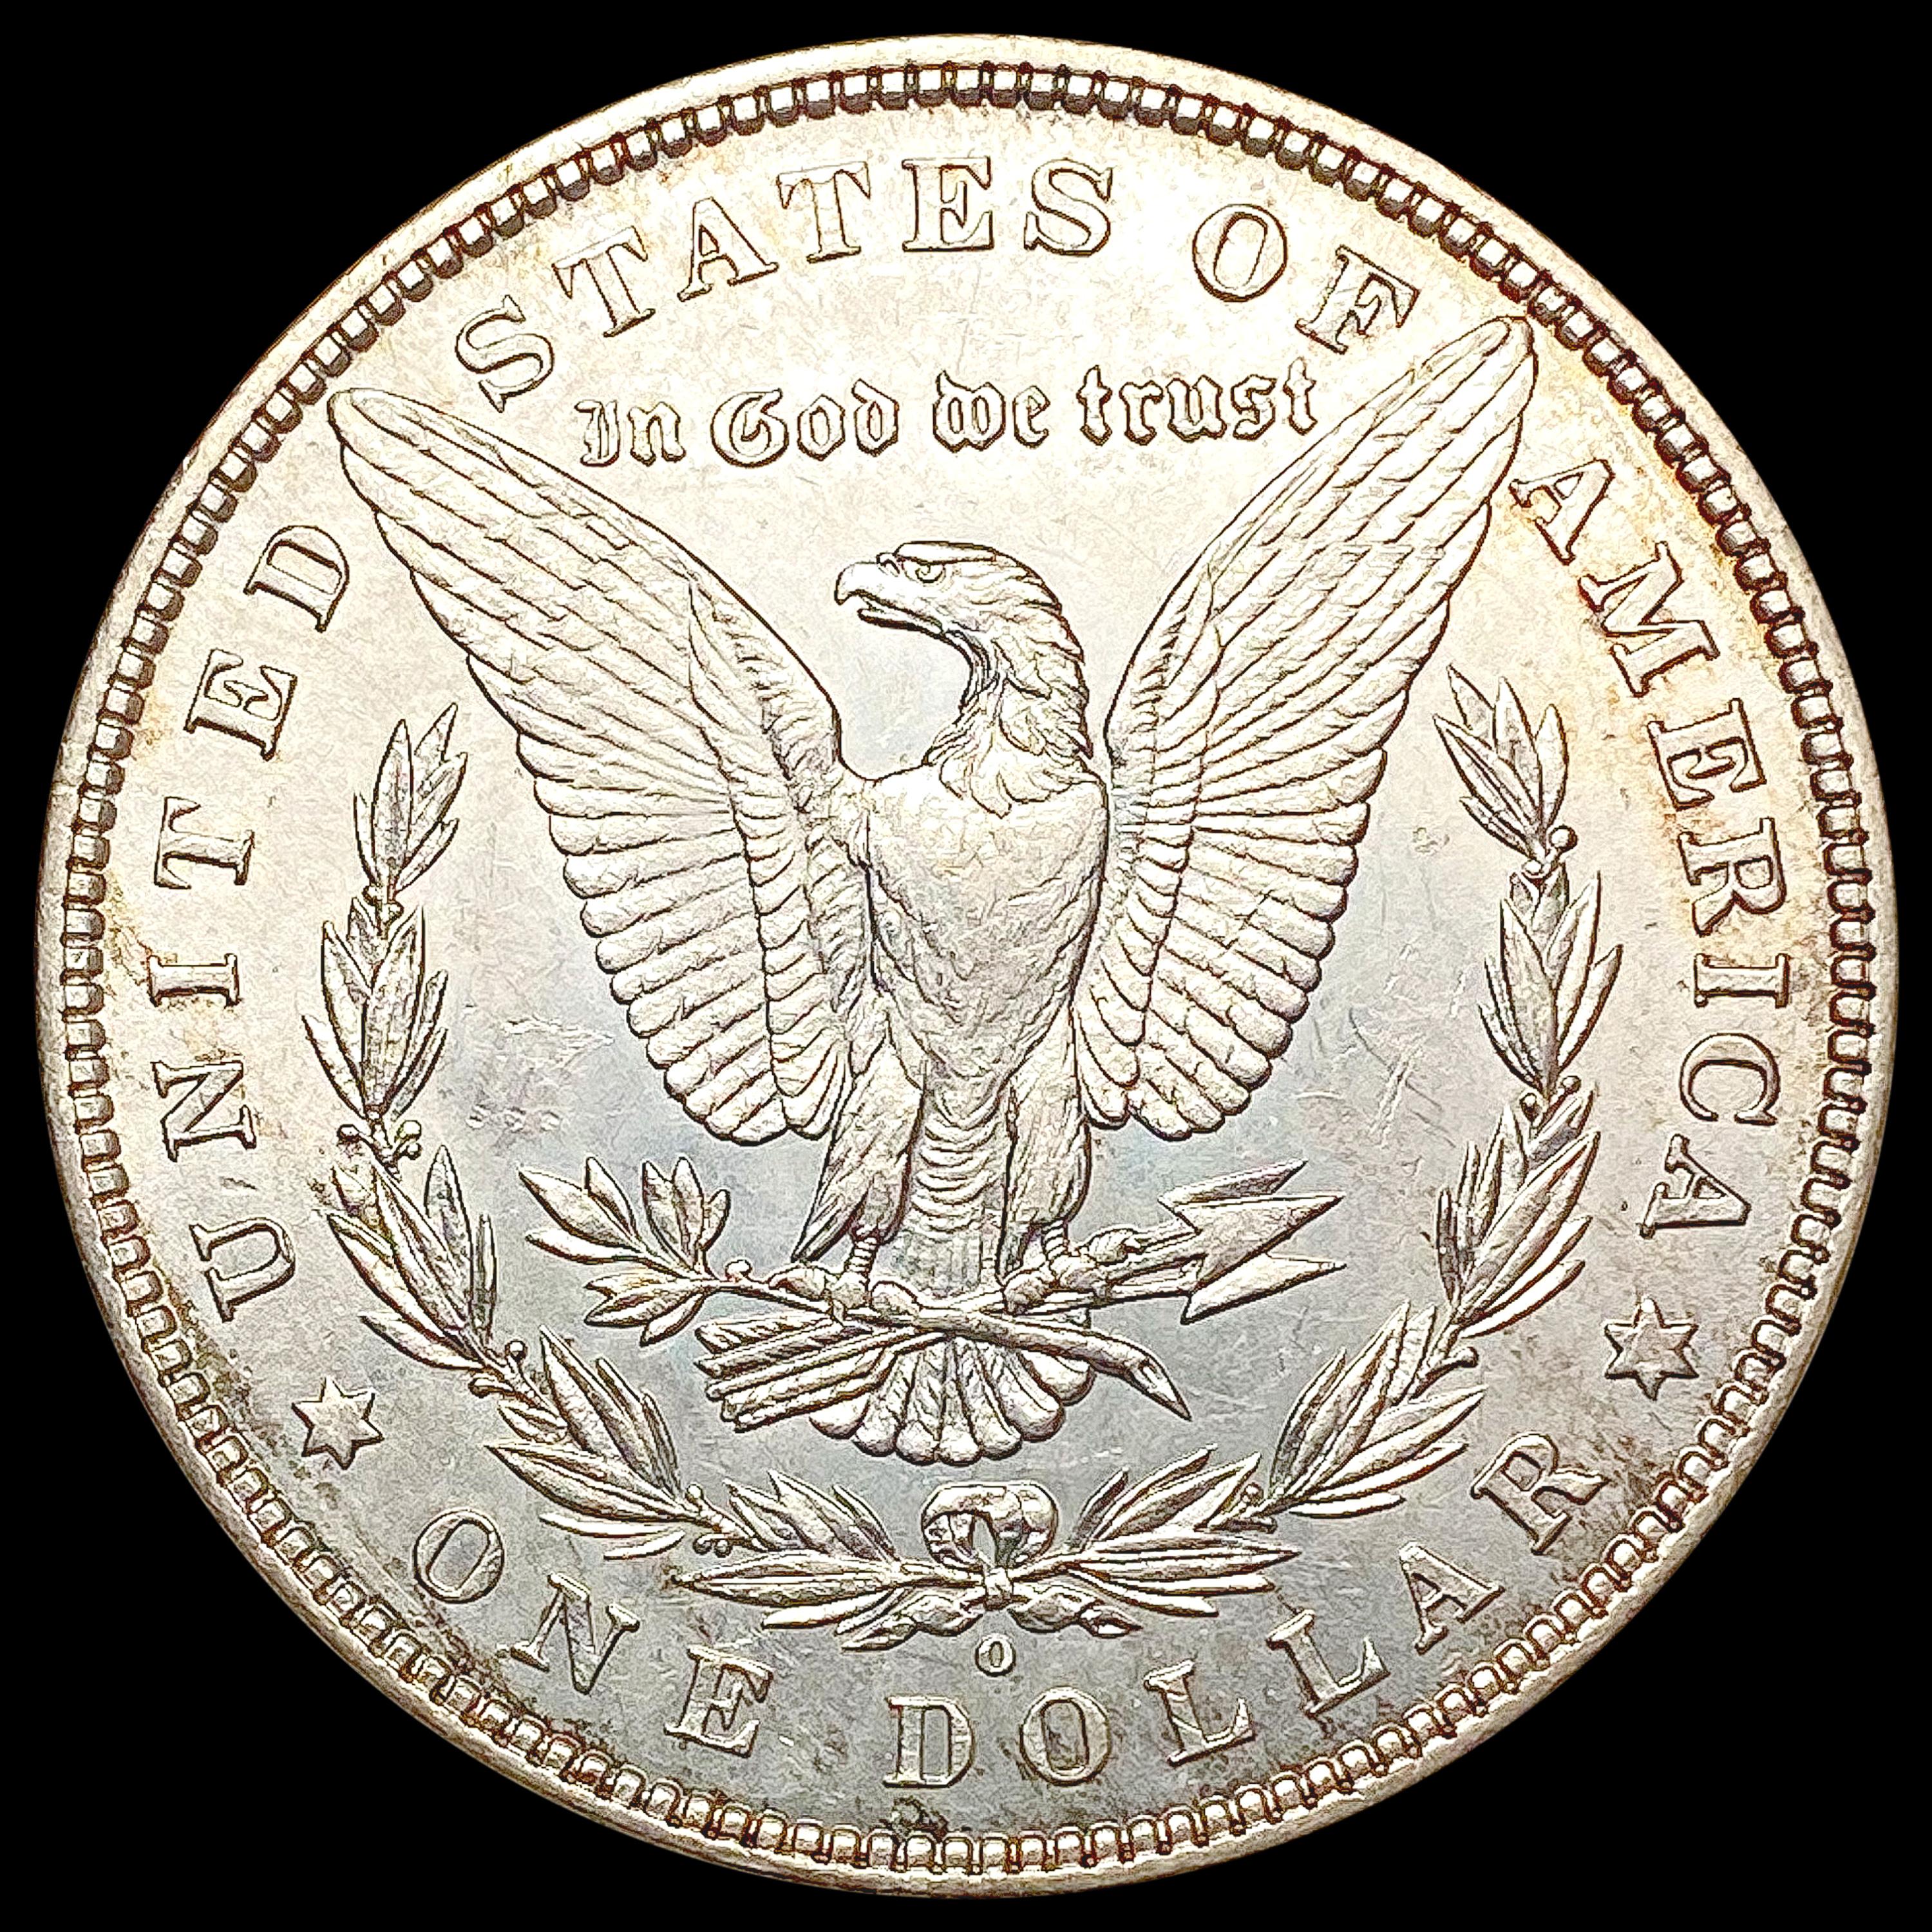 1880-O Morgan Silver Dollar UNCIRCULATED